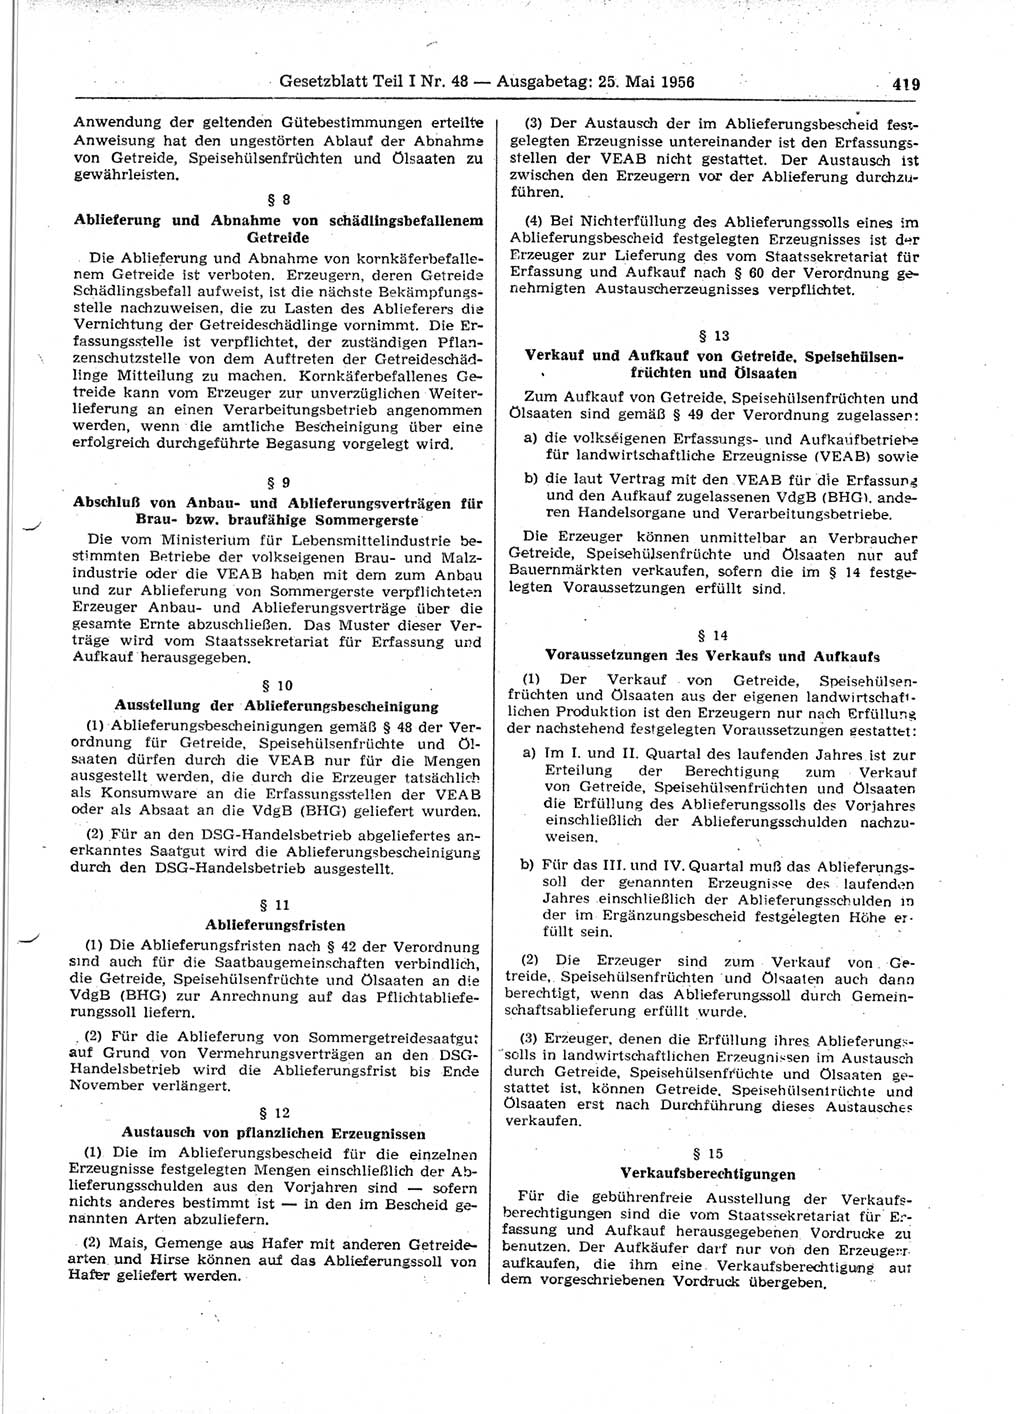 Gesetzblatt (GBl.) der Deutschen Demokratischen Republik (DDR) Teil Ⅰ 1956, Seite 419 (GBl. DDR Ⅰ 1956, S. 419)